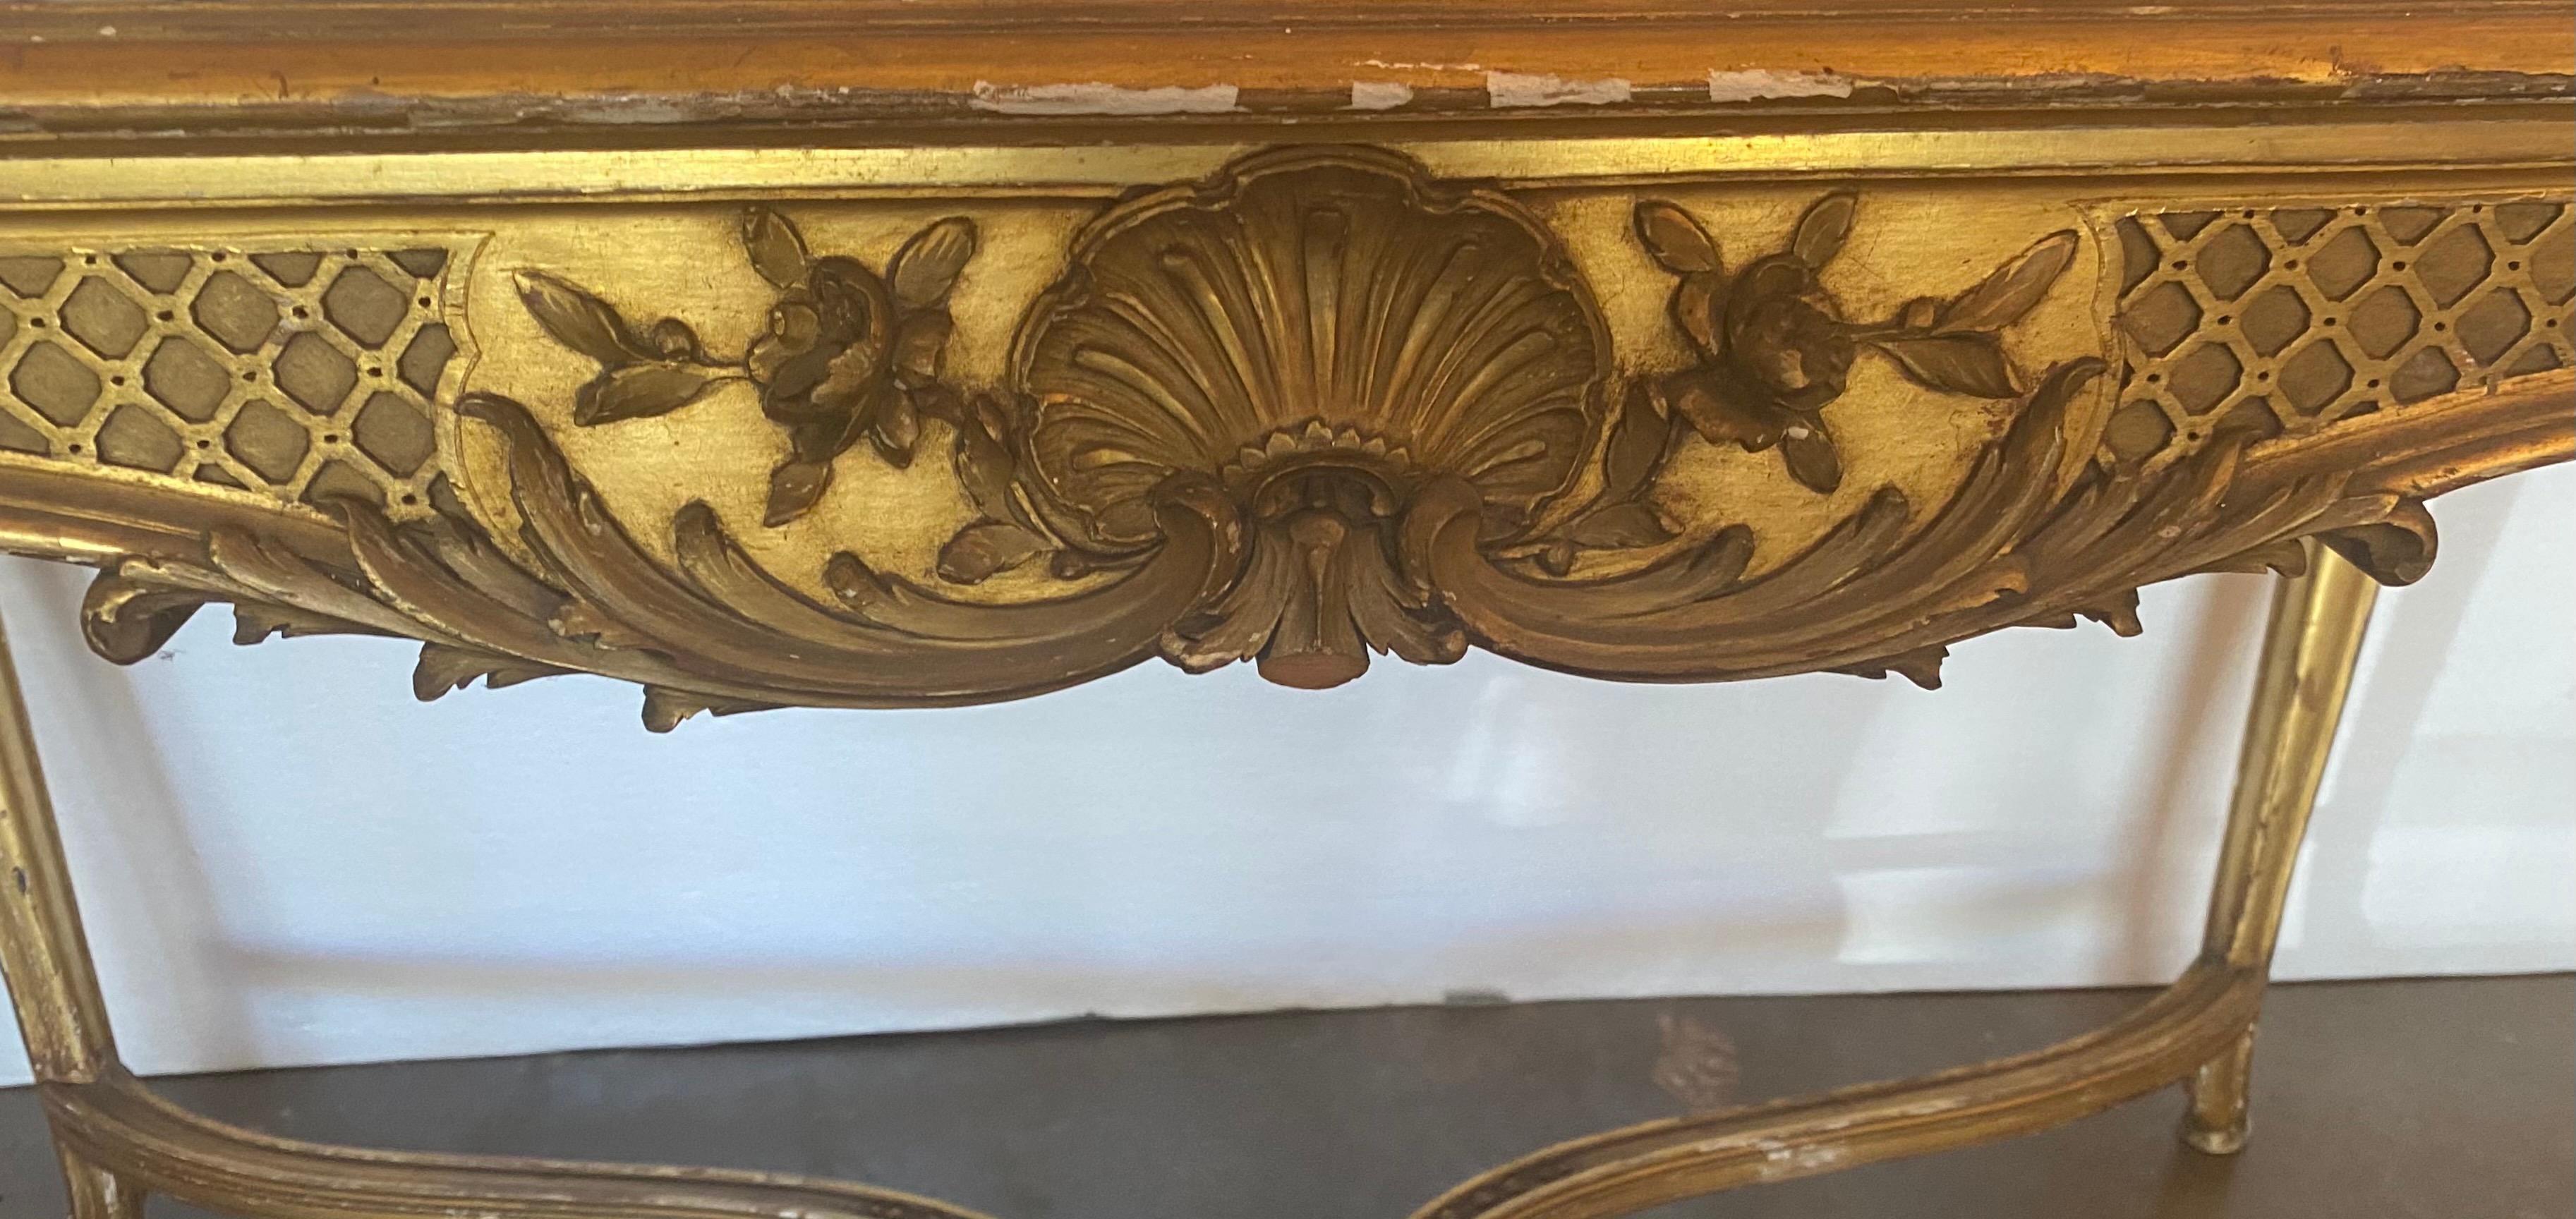 Außergewöhnlicher Tisch mit vergoldeter Marmorplatte im Louis XV-Stil, Mitte 19. Jh., mit geformter, eingelassener Marmorplatte, über einer geschnitzten Schürze mit Blattwerk- und Muschelmotiven, auf Kabriole-Beinen, die durch eine X-Brücke